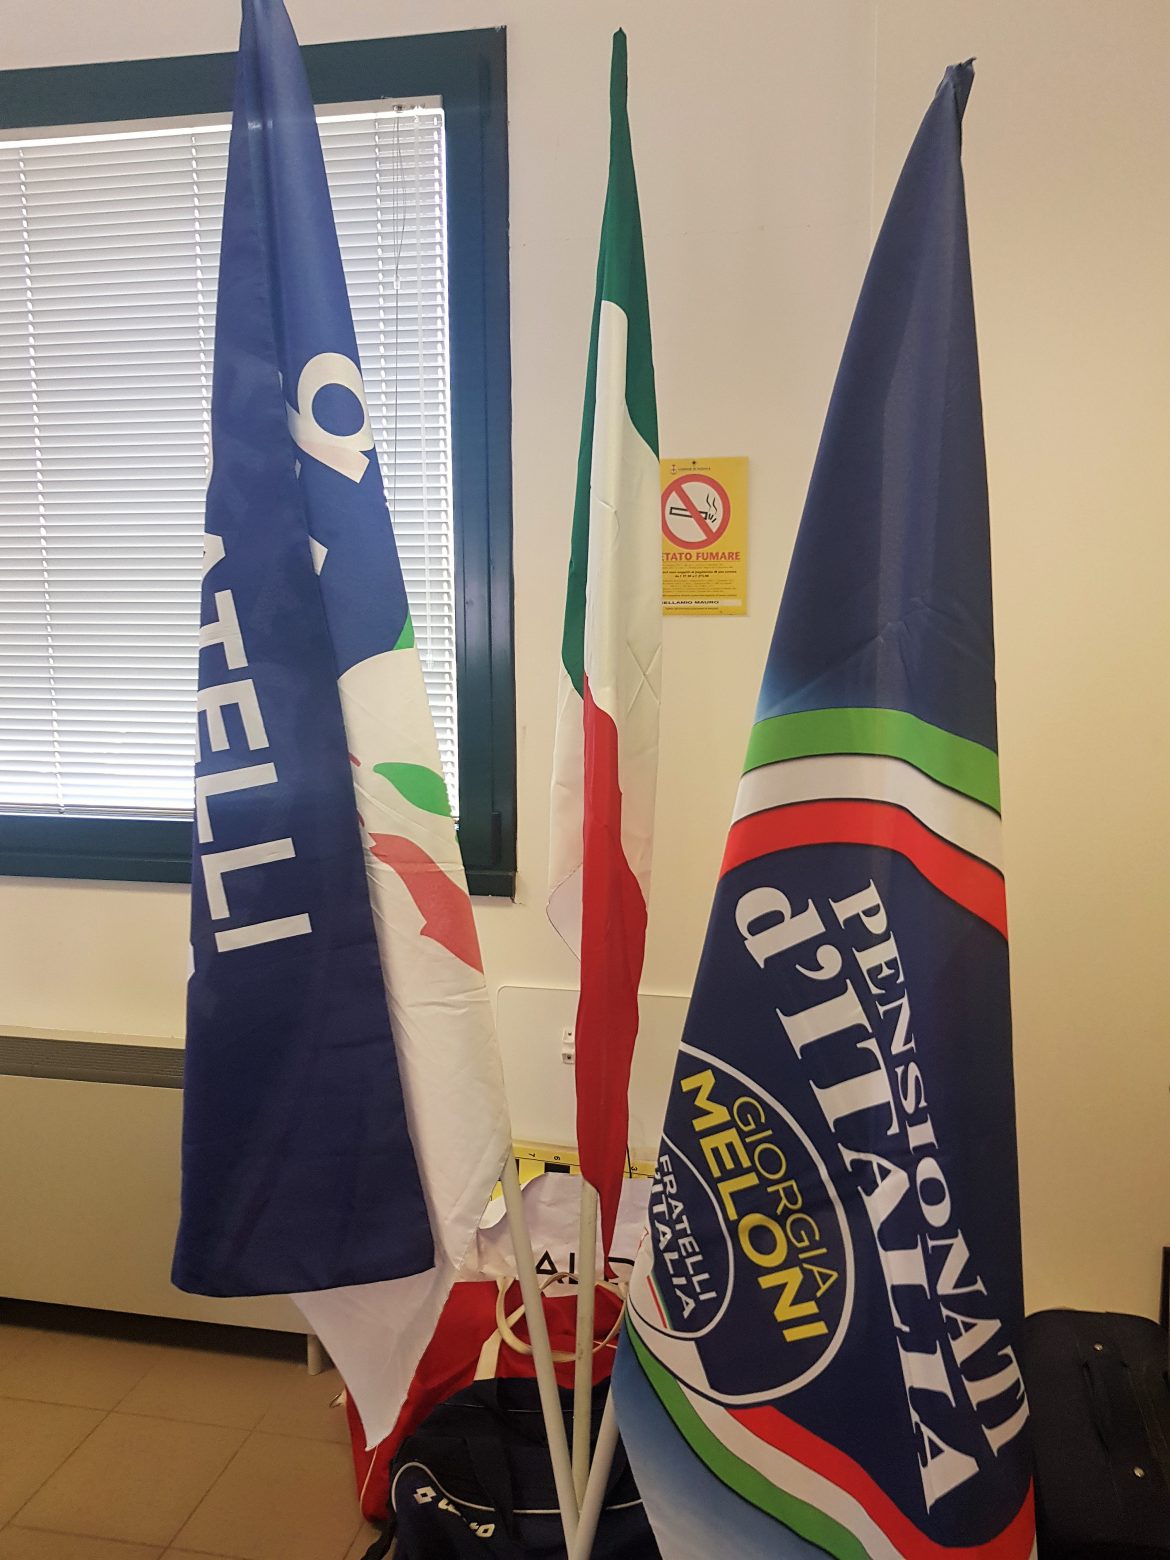 Milano, Bologna e Perugia, Attività del Dipartimento Pensionati d’Italia nei Territori, insieme a Fratelli d’Italia, 28 maggio 2022.